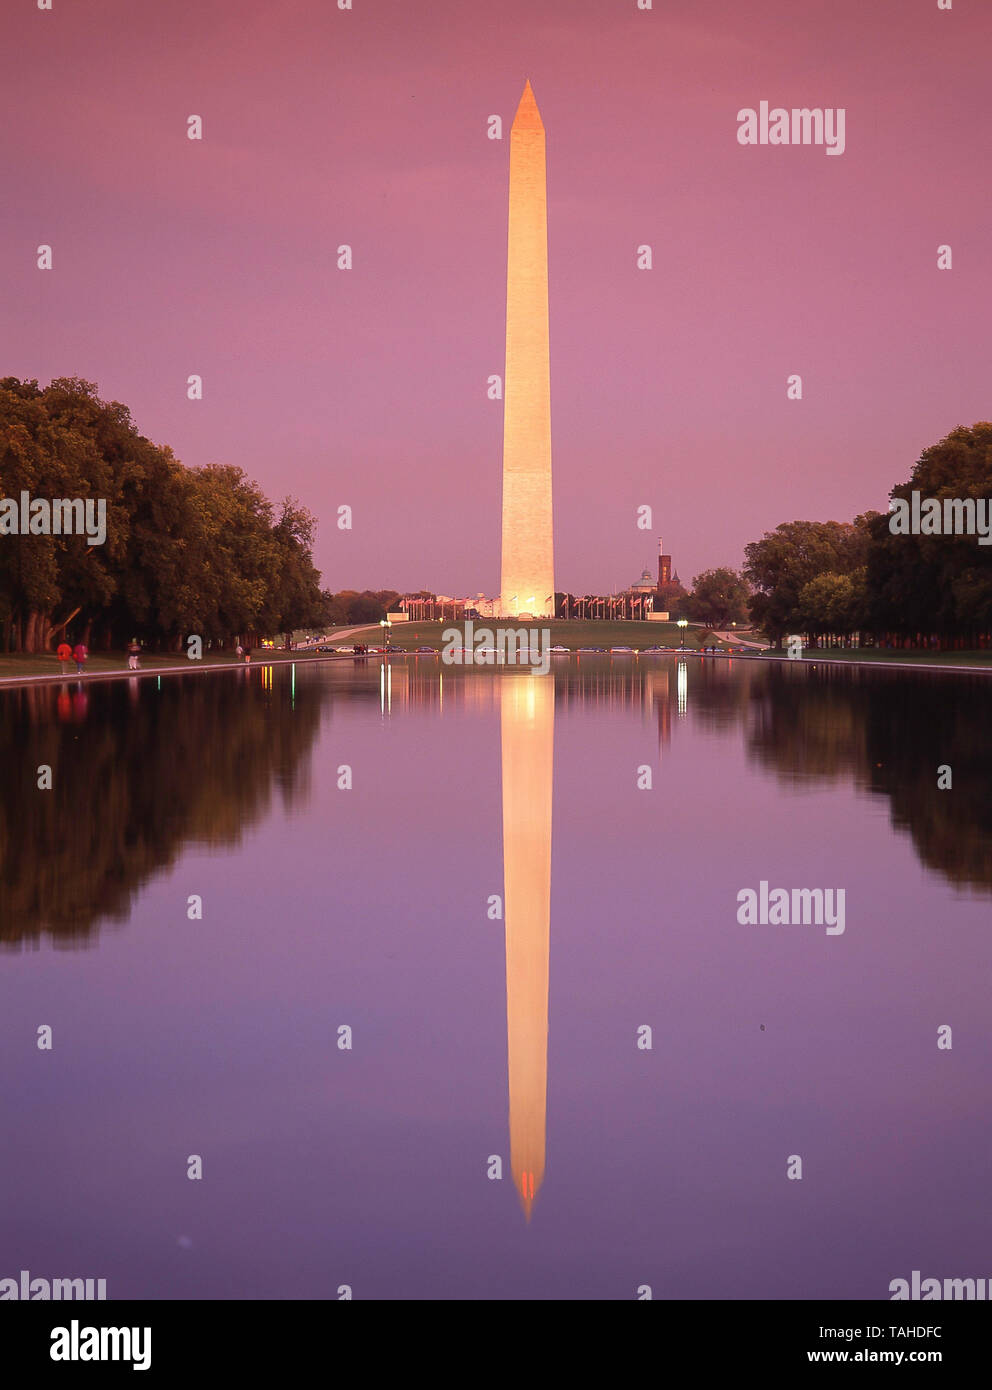 Le Washington Monument et le Lincoln Memorial Reflecting Pool au crépuscule, Washington DC, États-Unis d'Amérique Banque D'Images